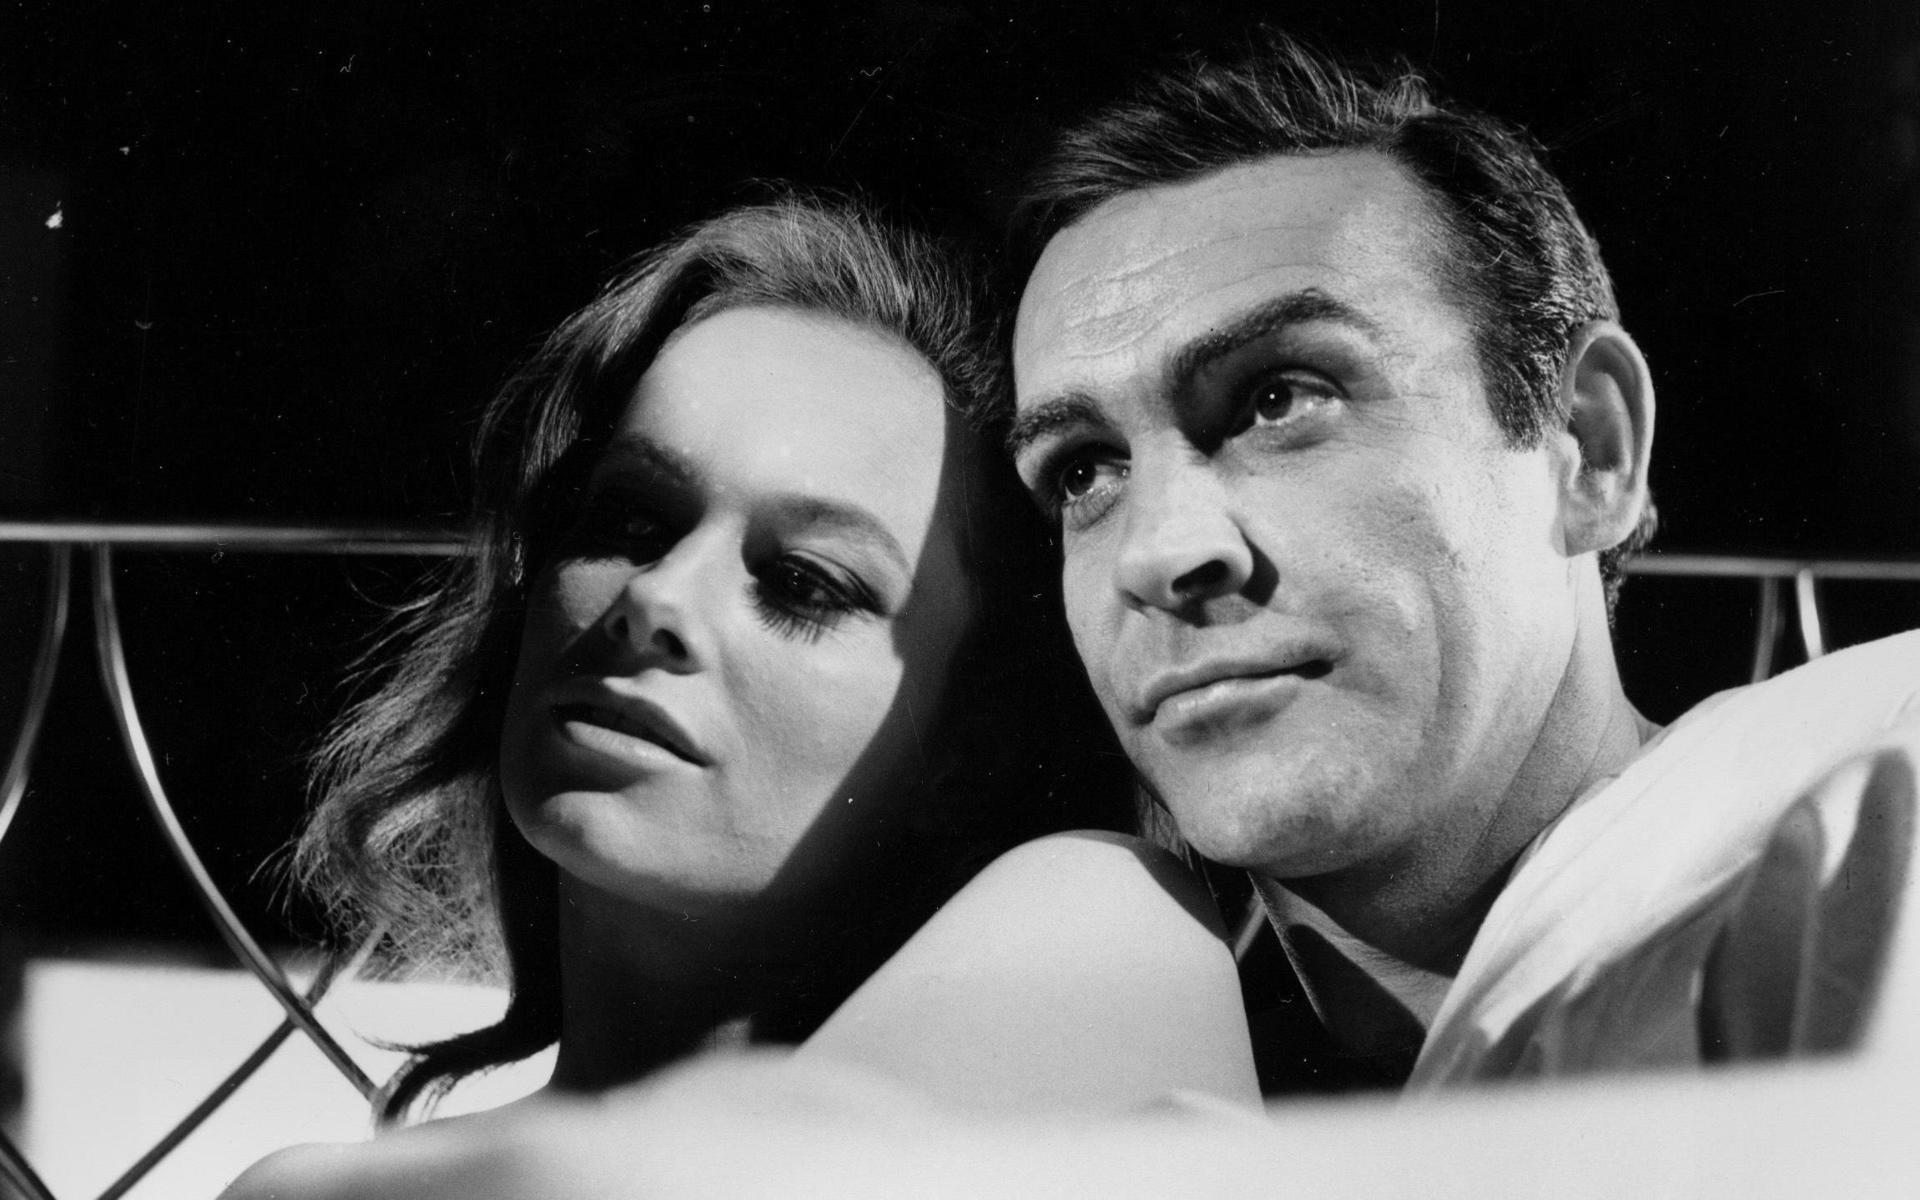 Här syns Sean Connery med Italienska skådespelerskan Luciana Paluzzi, 25, som spelade agenten Fiona Volpe i James Bond-filmen ”Åskbollen” 1965. Paluzzi medverkade i över 80 film- och TV-produktioner åren 1953-1978, men rollen i ”Åsbollen” blev hennes mest kända.